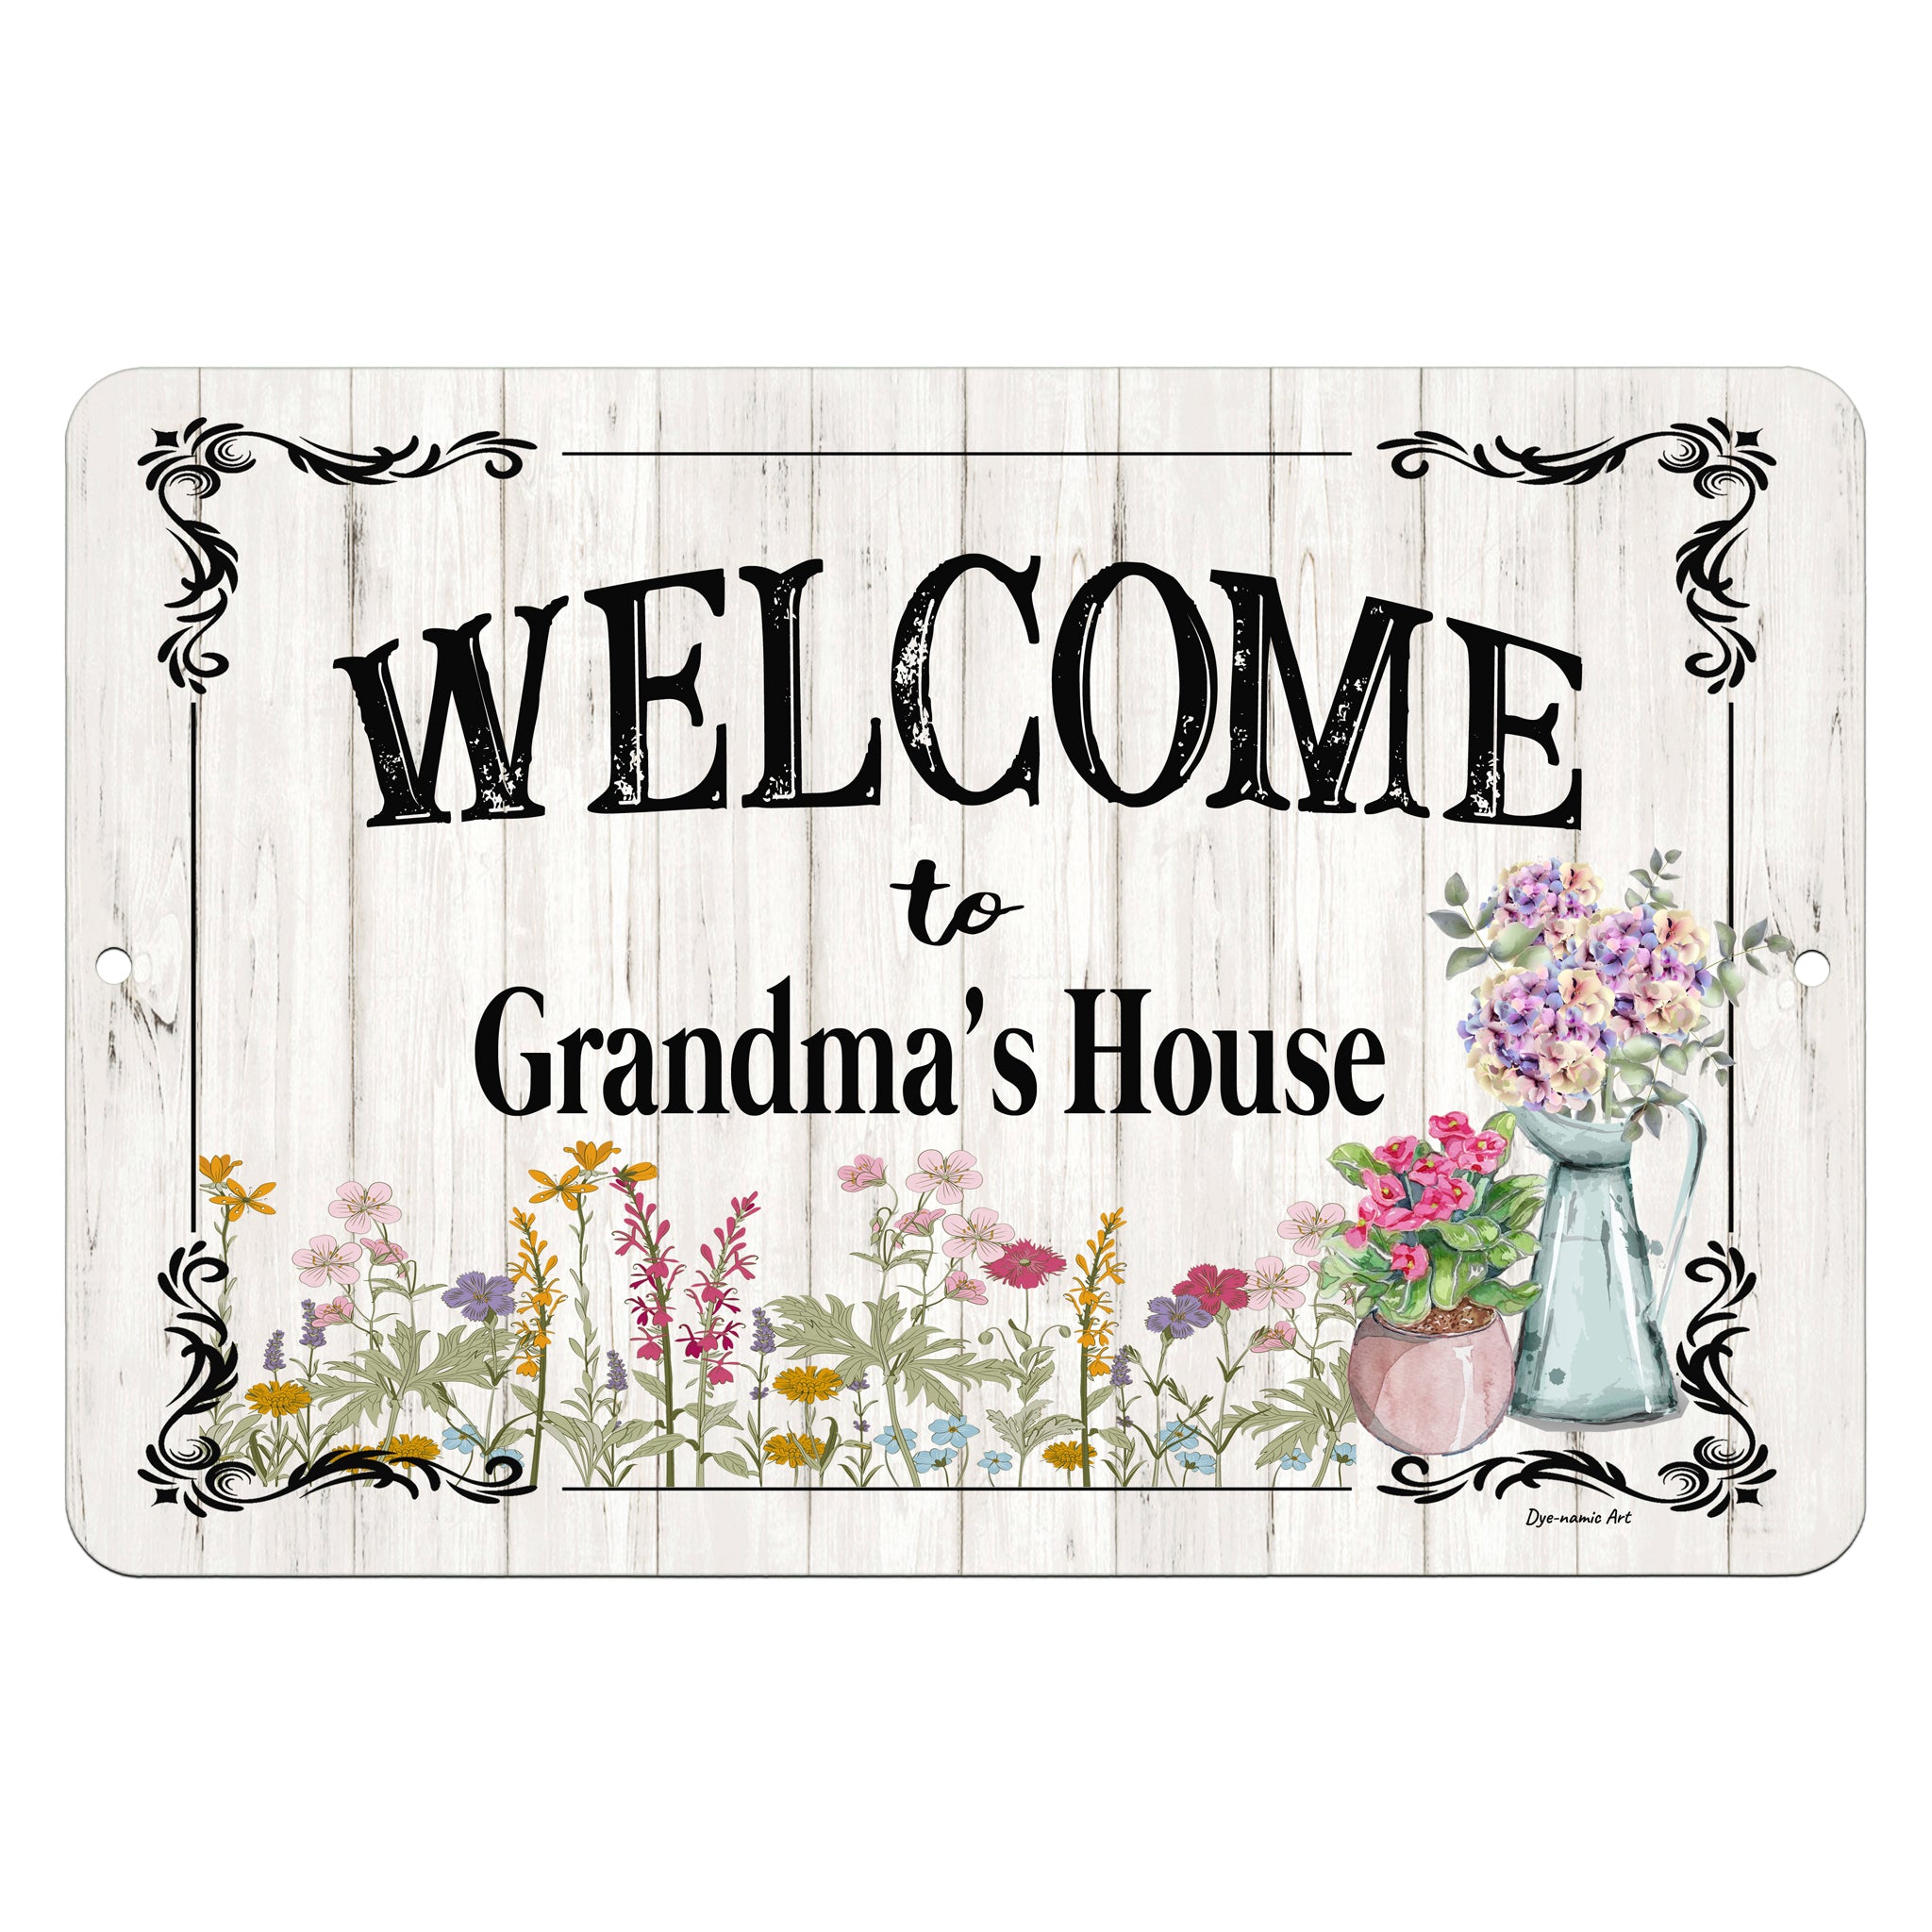 To Grandma's House